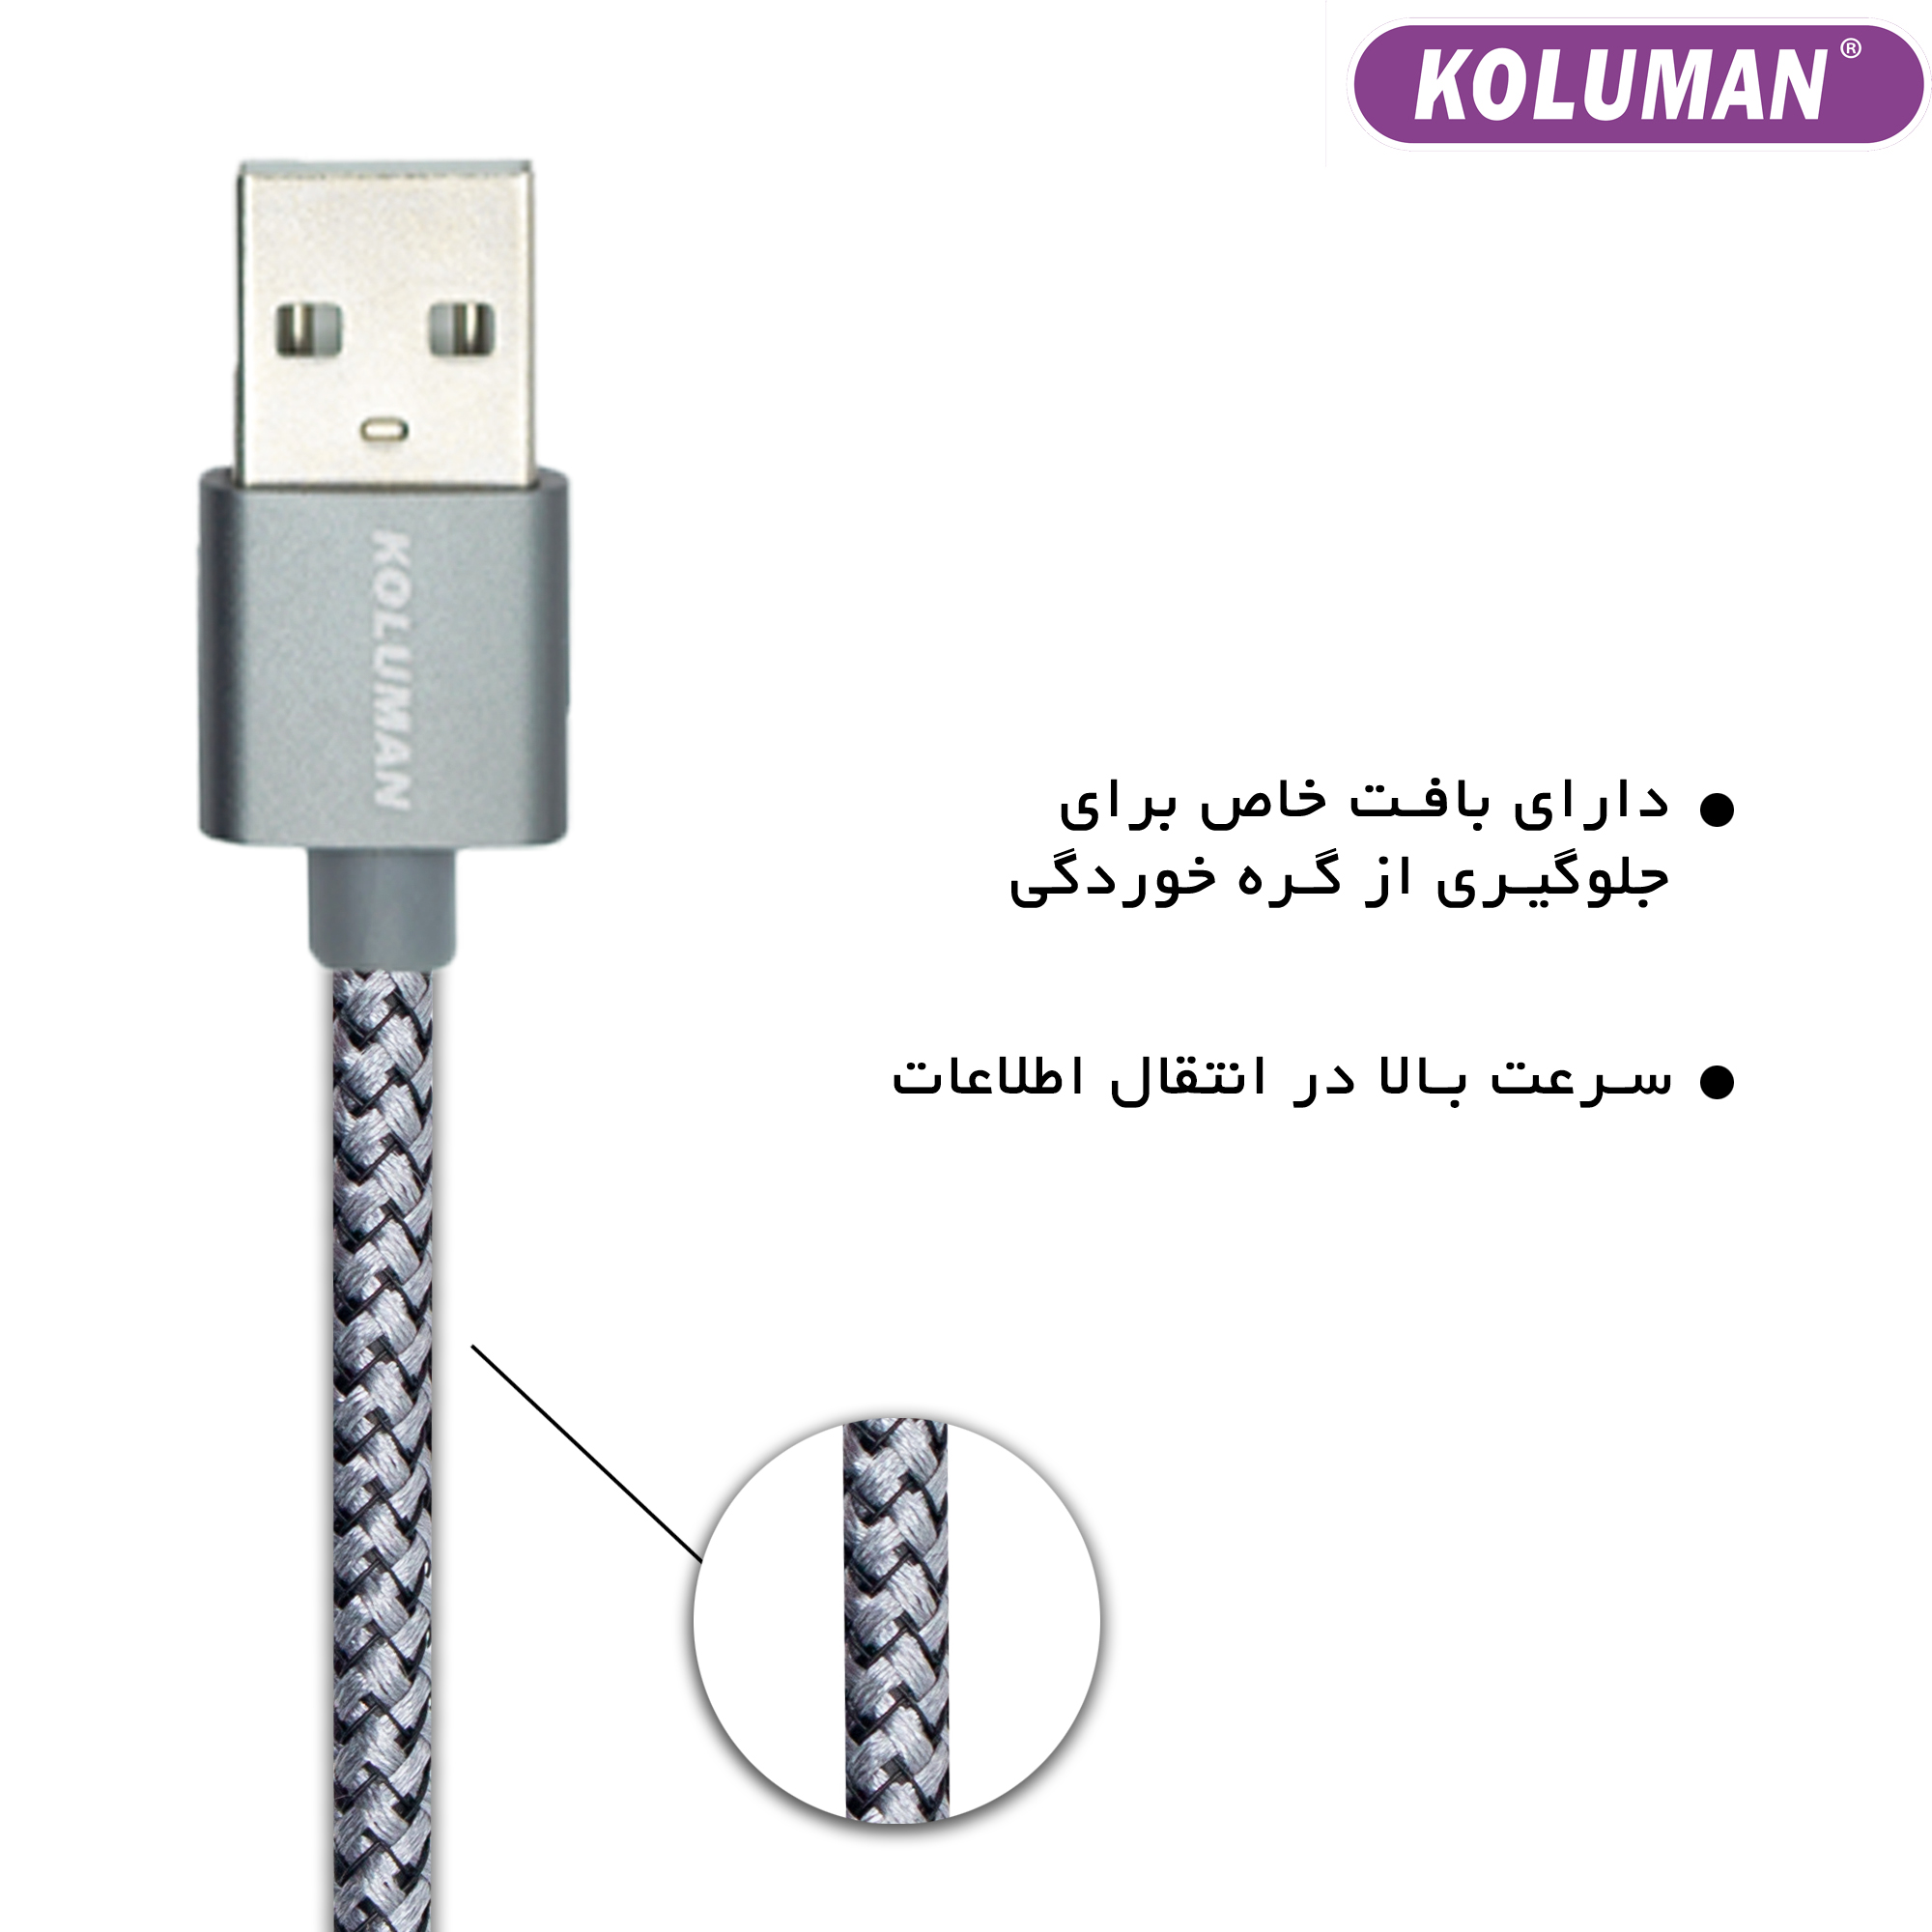 قیمت و خرید کابل تبدیل USB به USB - C کلومن مدل KD - 19 مجموعه 4 عددی